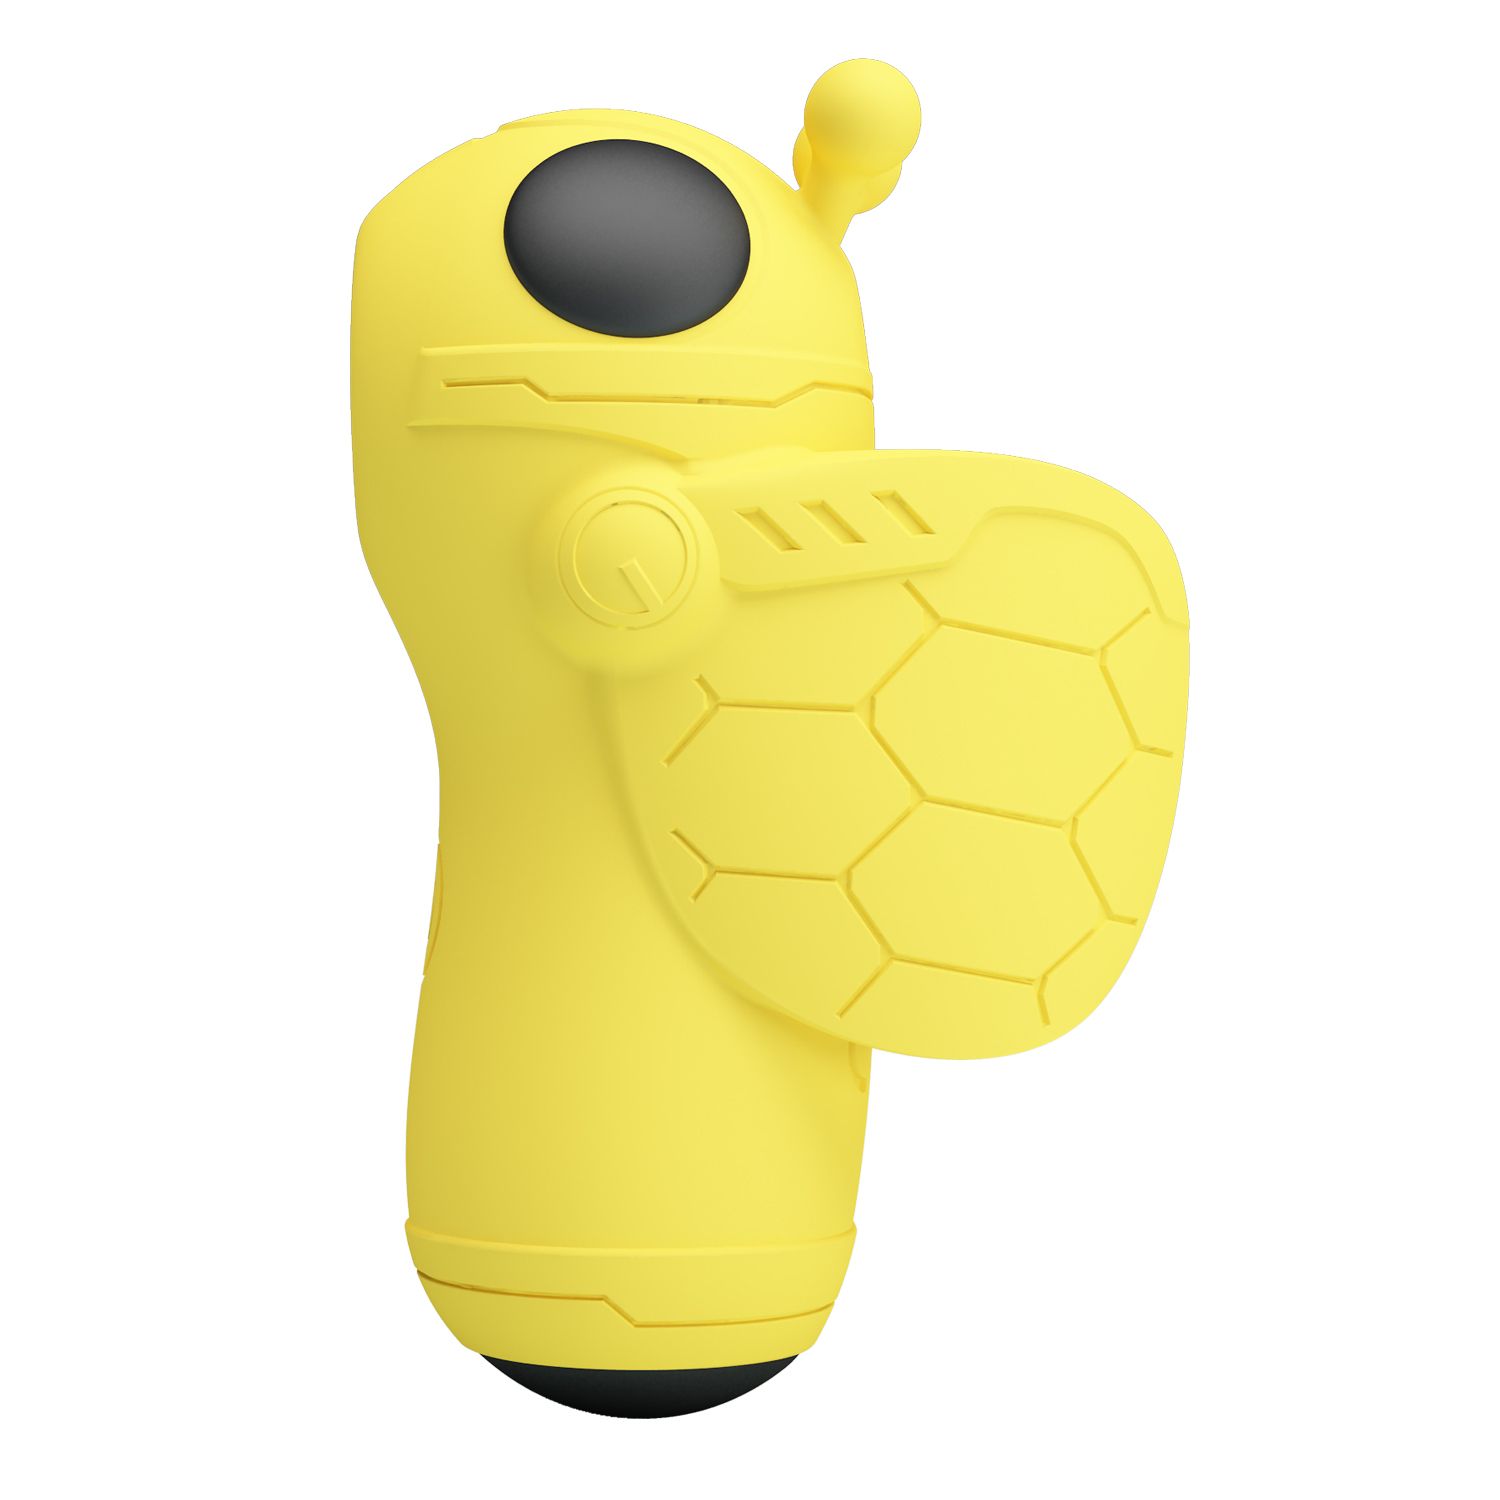 Желтый вакуумный стимулятор-пчелка Magic Bee. 10 режимов стимуляции вакуумом.